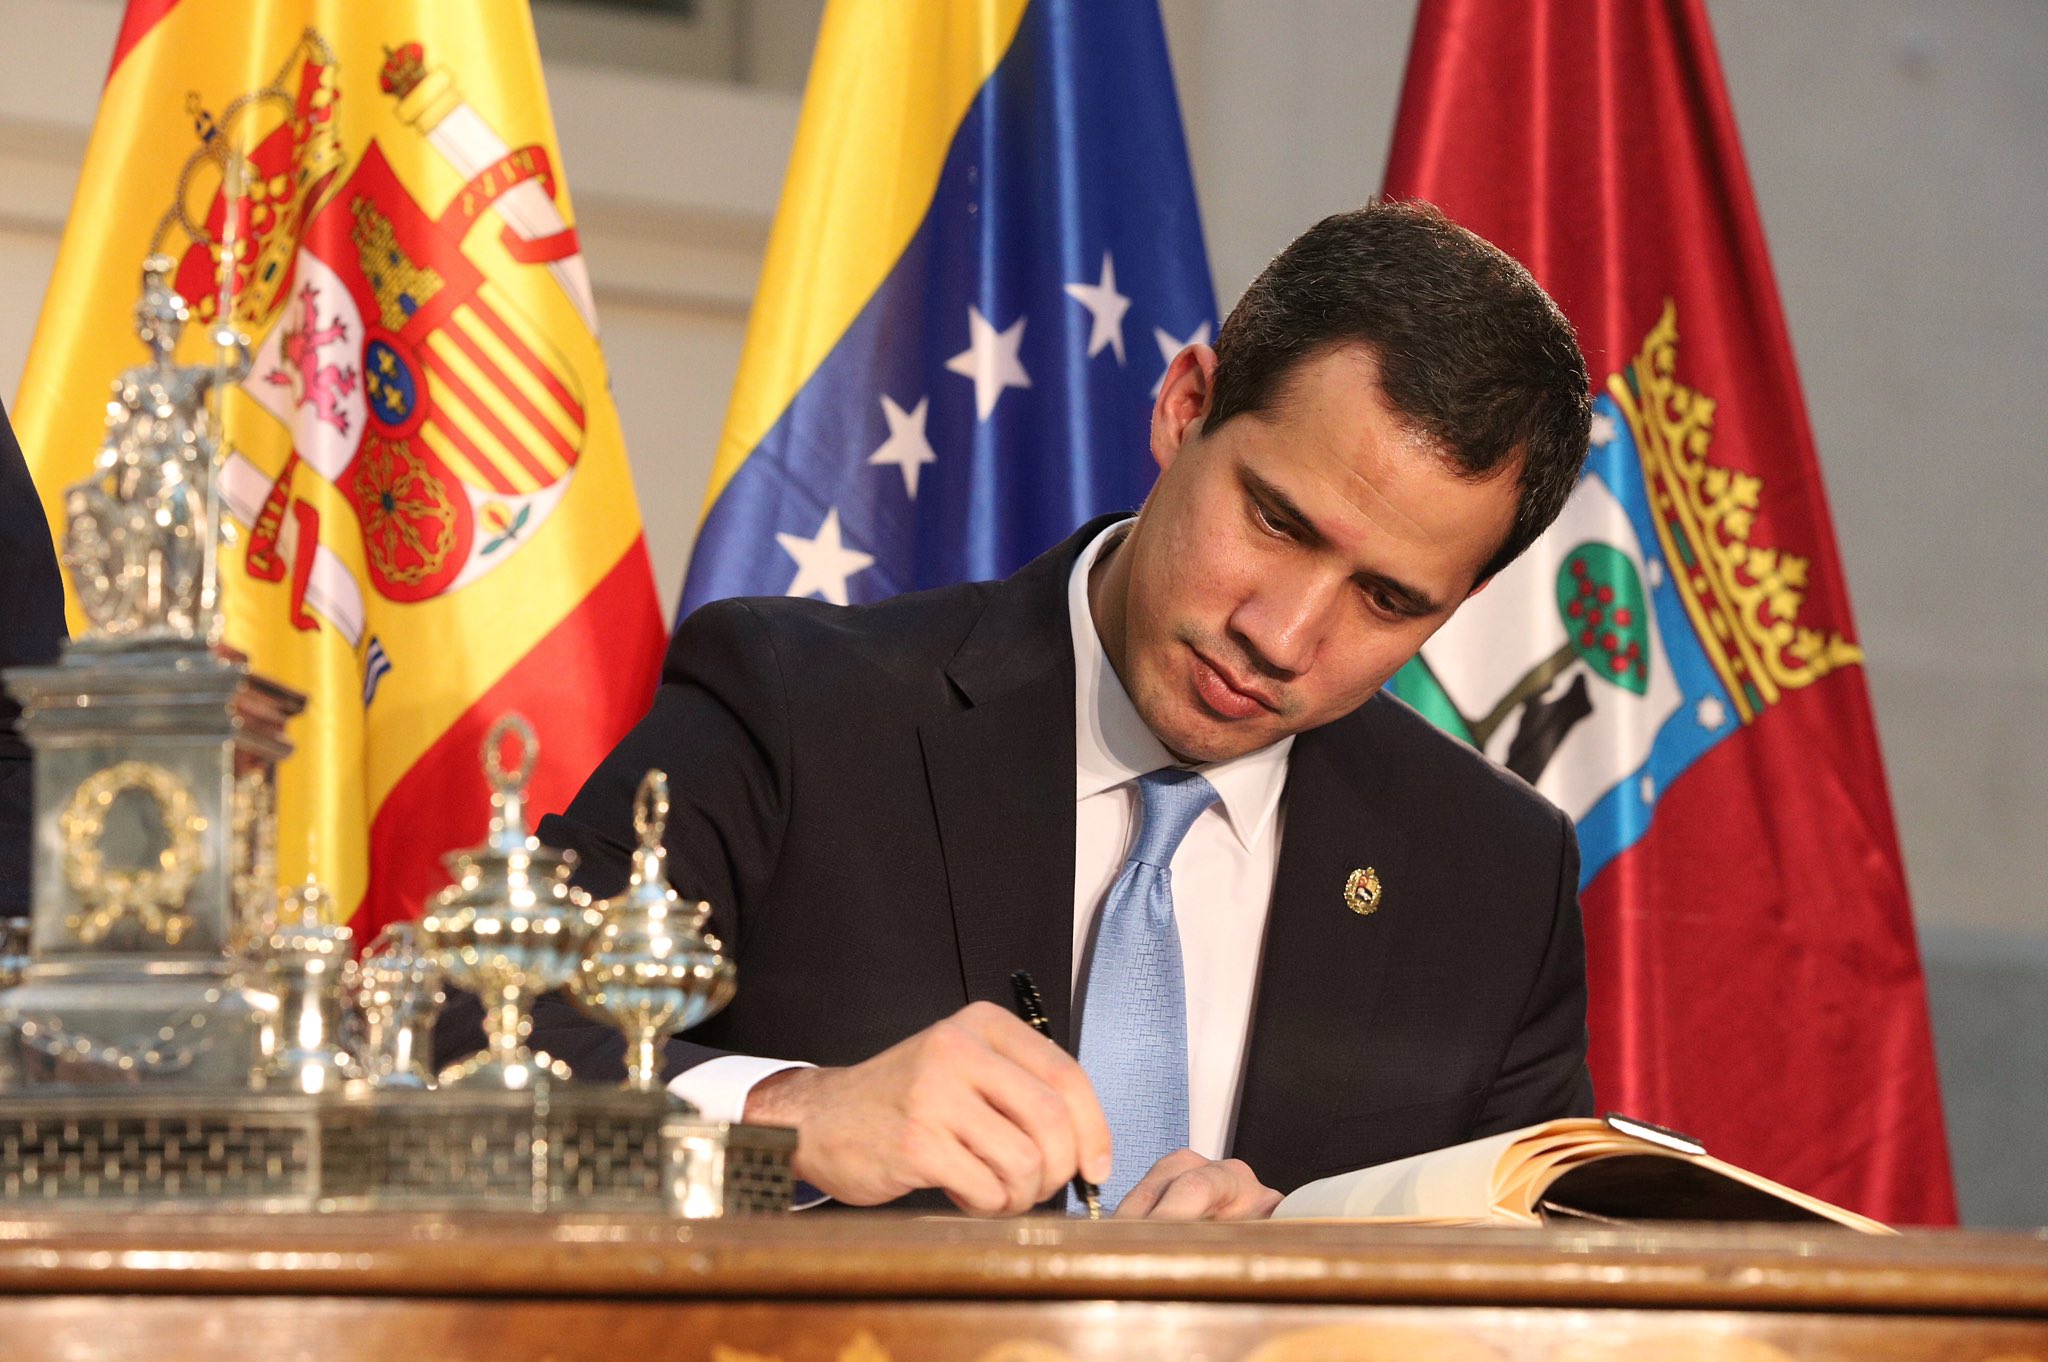 Durante su reciente visita a España, Guaidó recibió la llave de oro de la ciudad de Madrid. Foto: Twitter / Juan Guaidó